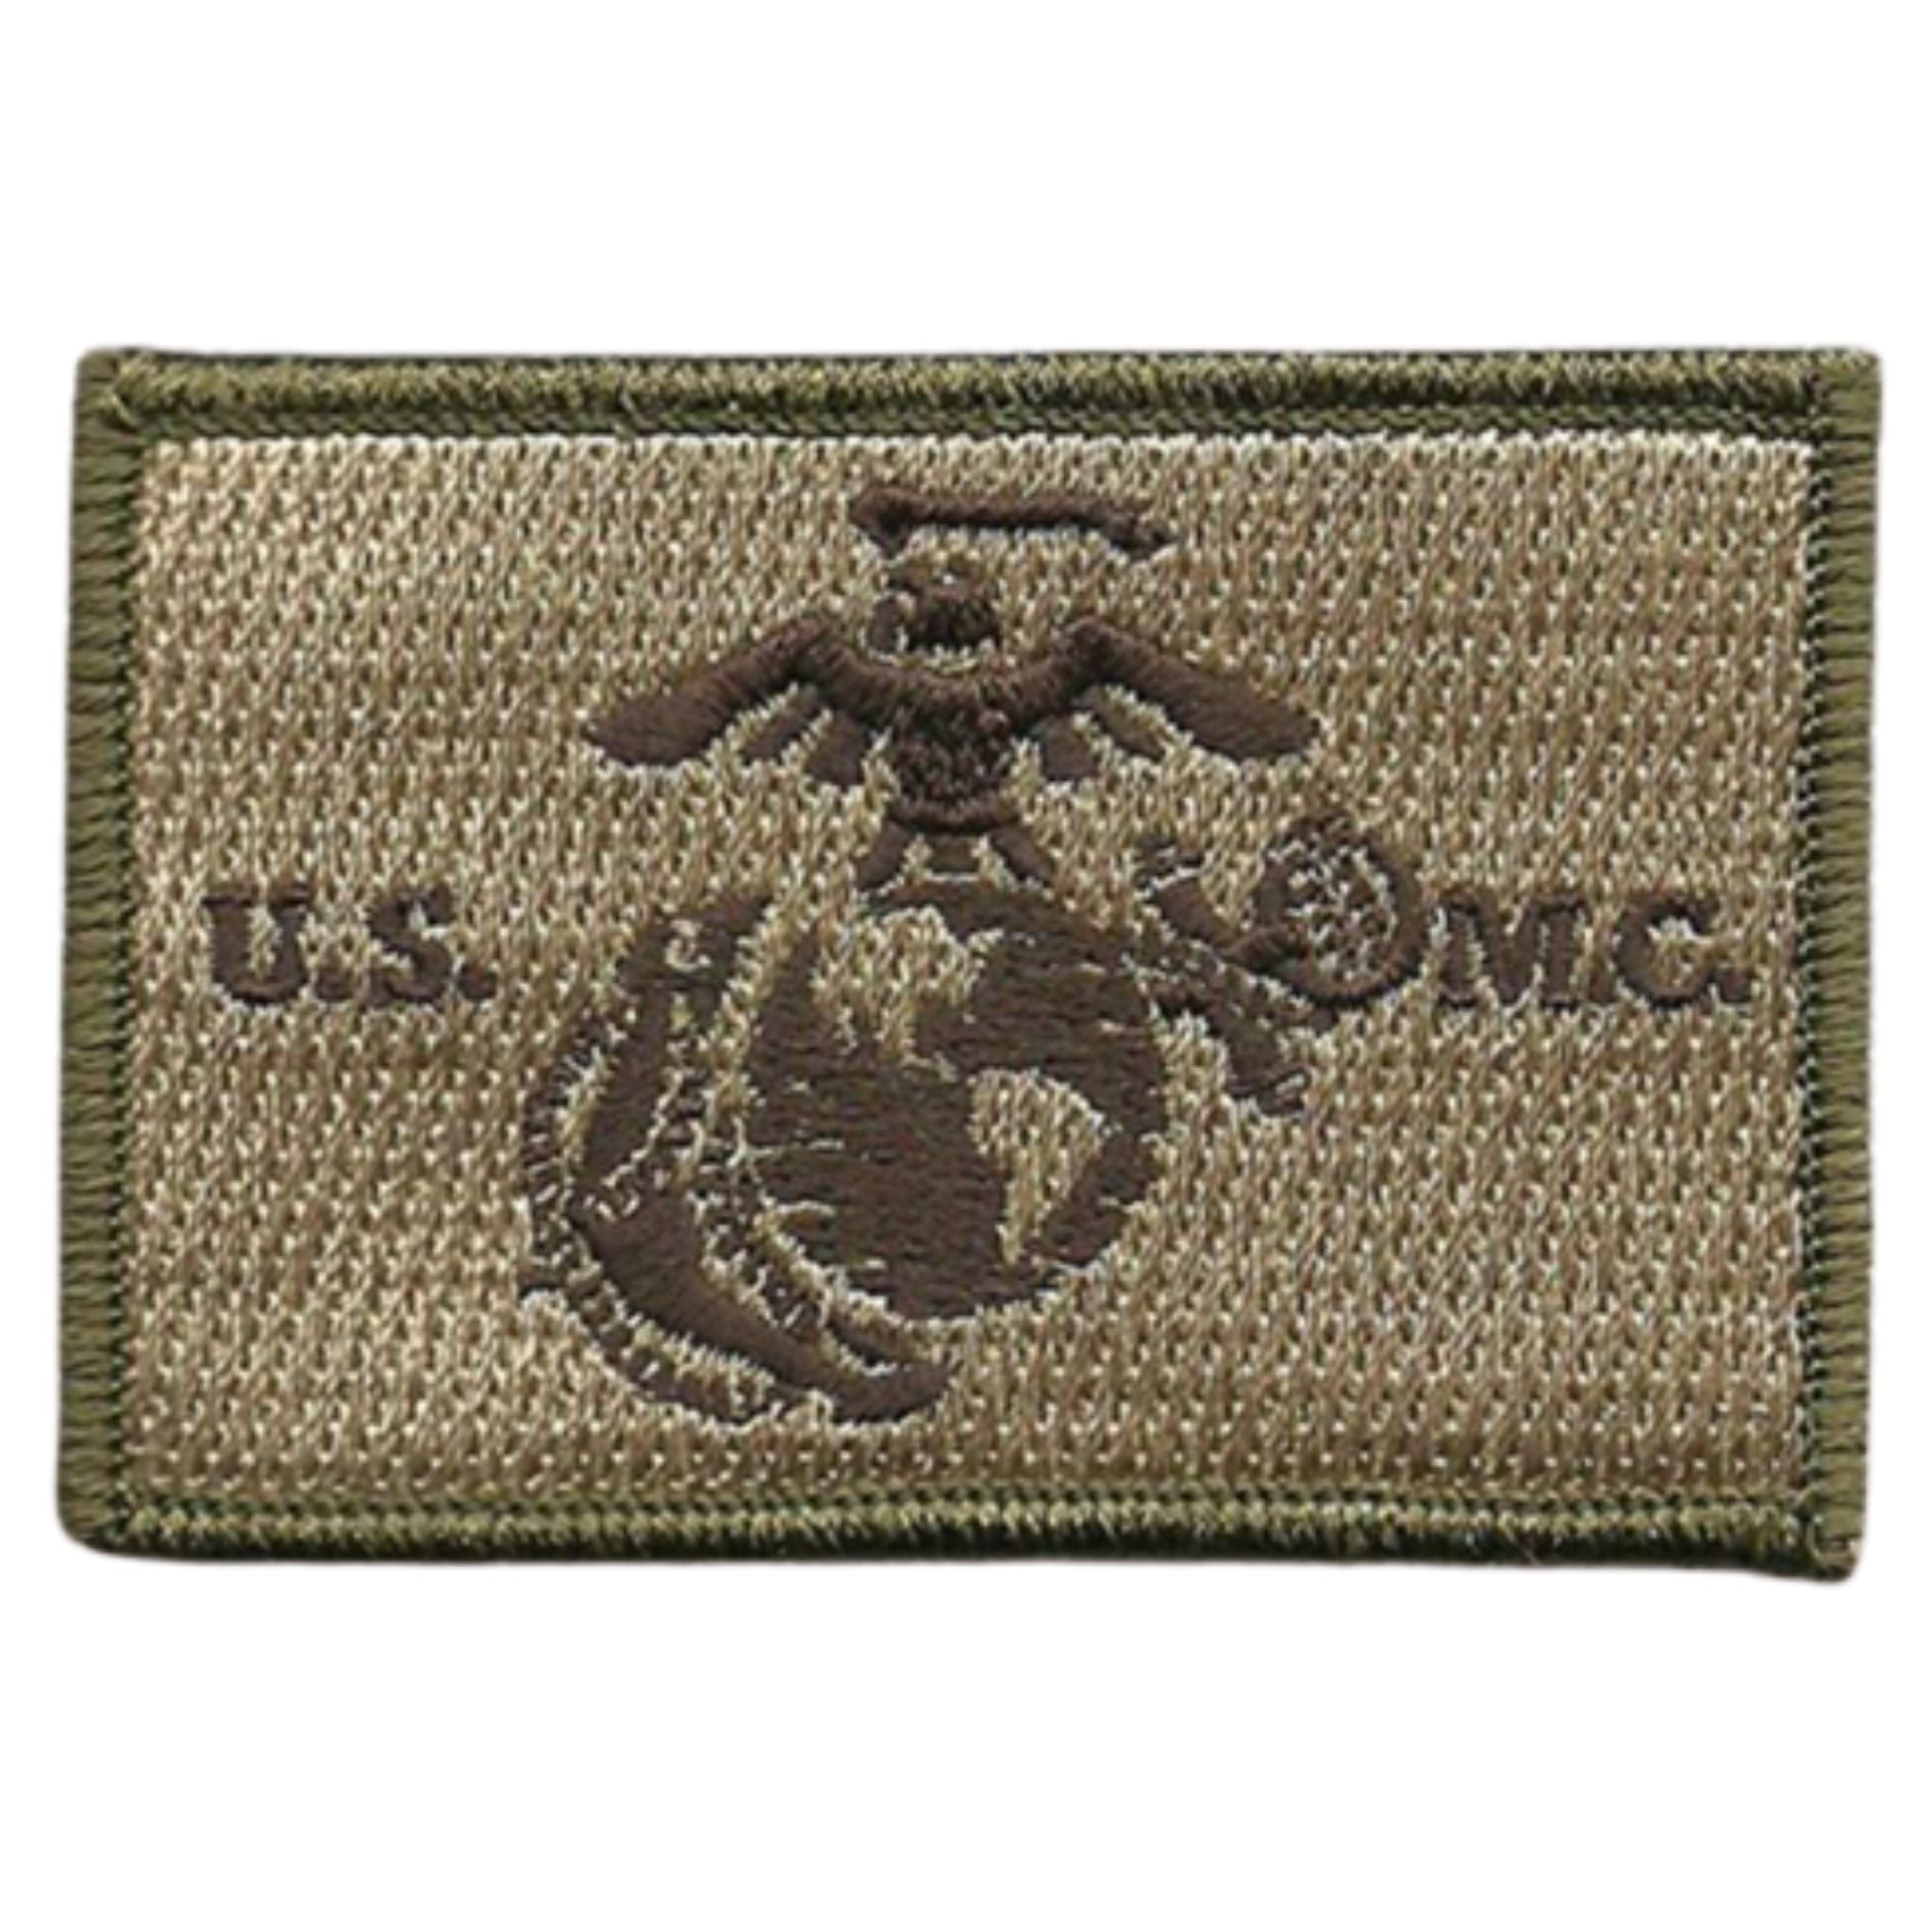 USMC Round Velcro Patch – Kind of Outdoorsy